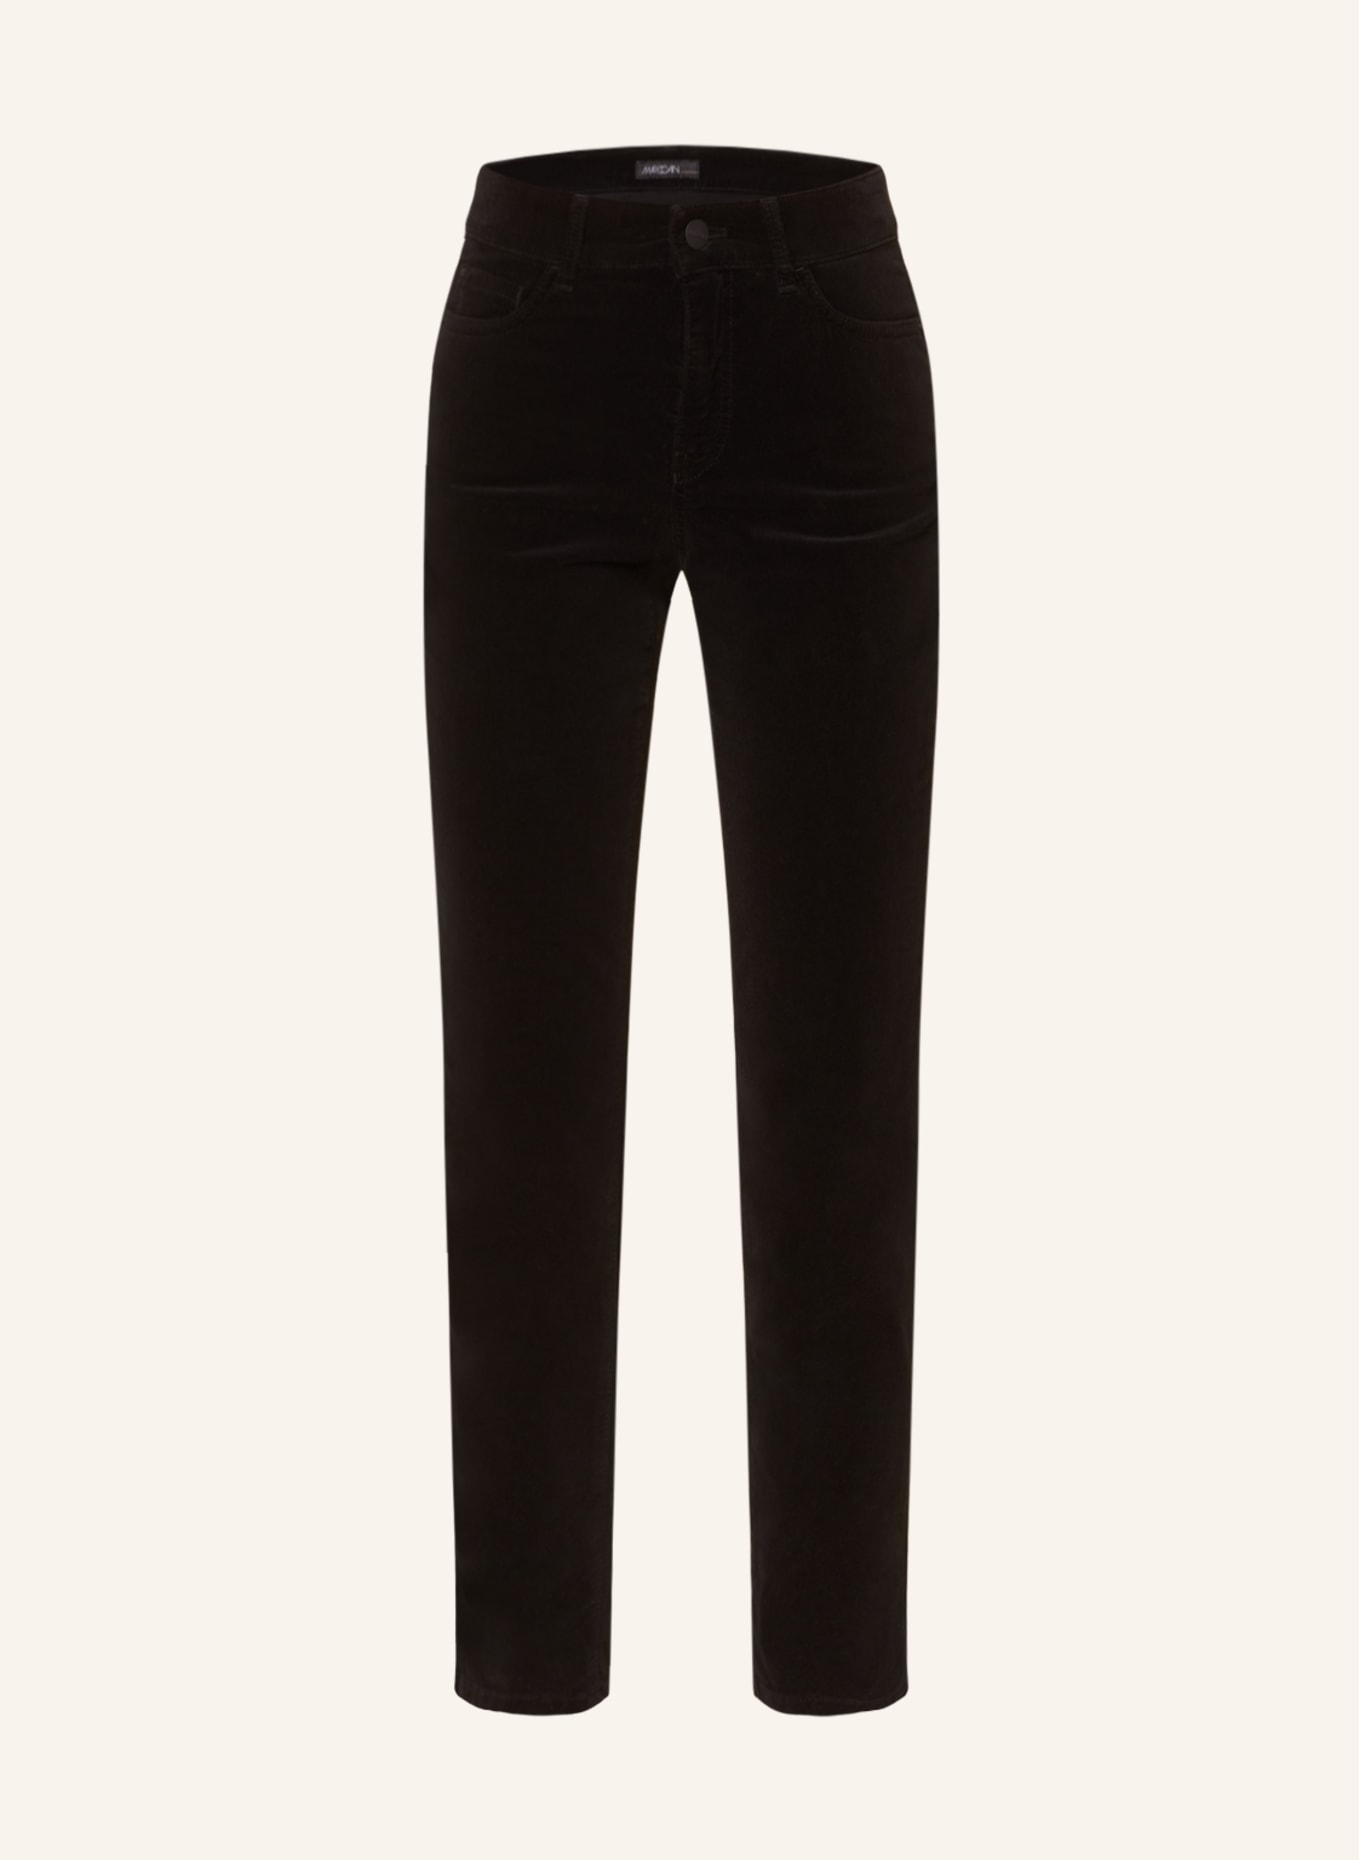 MARC CAIN Velvet trousers SILEA, Color: 900 BLACK (Image 1)